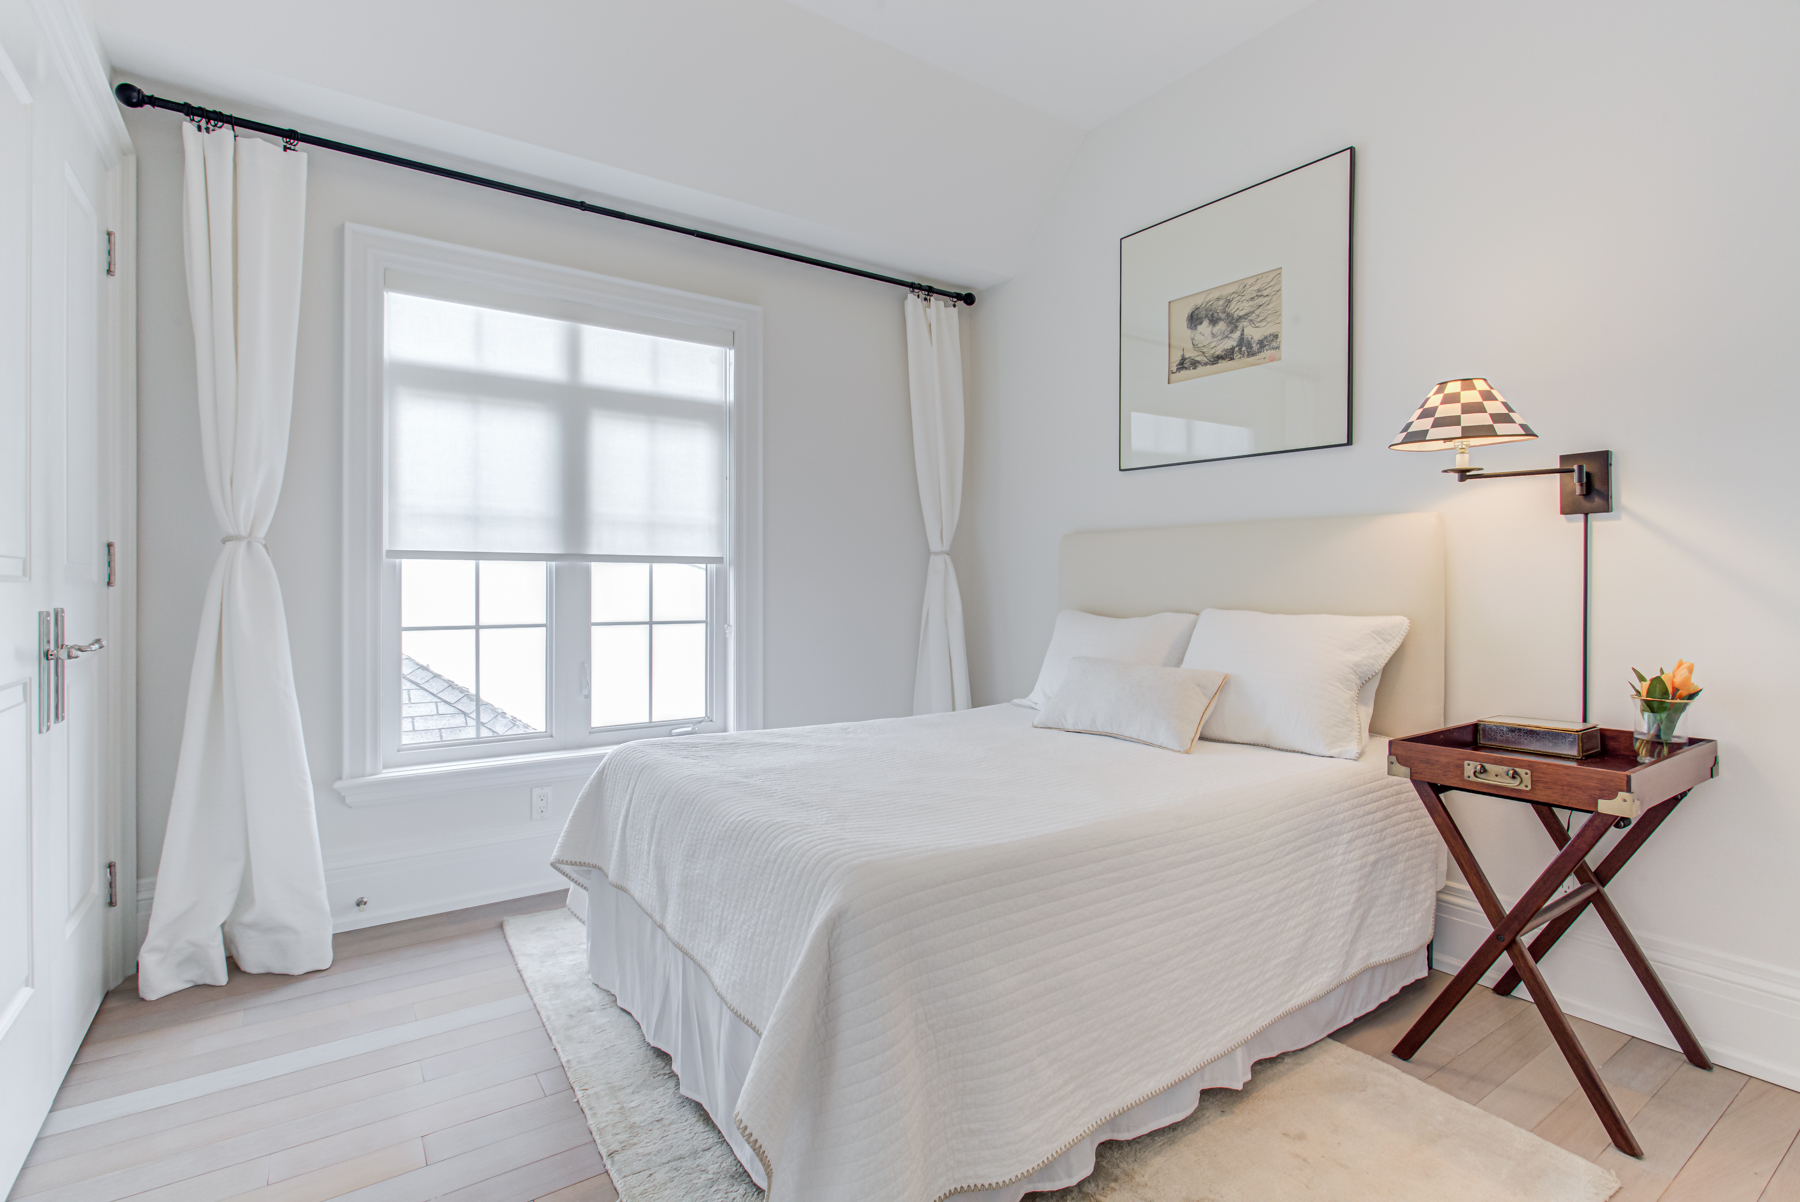 741 Glencairn Ave – 2nd bedroom with hardwood floors, window and double-door closet.